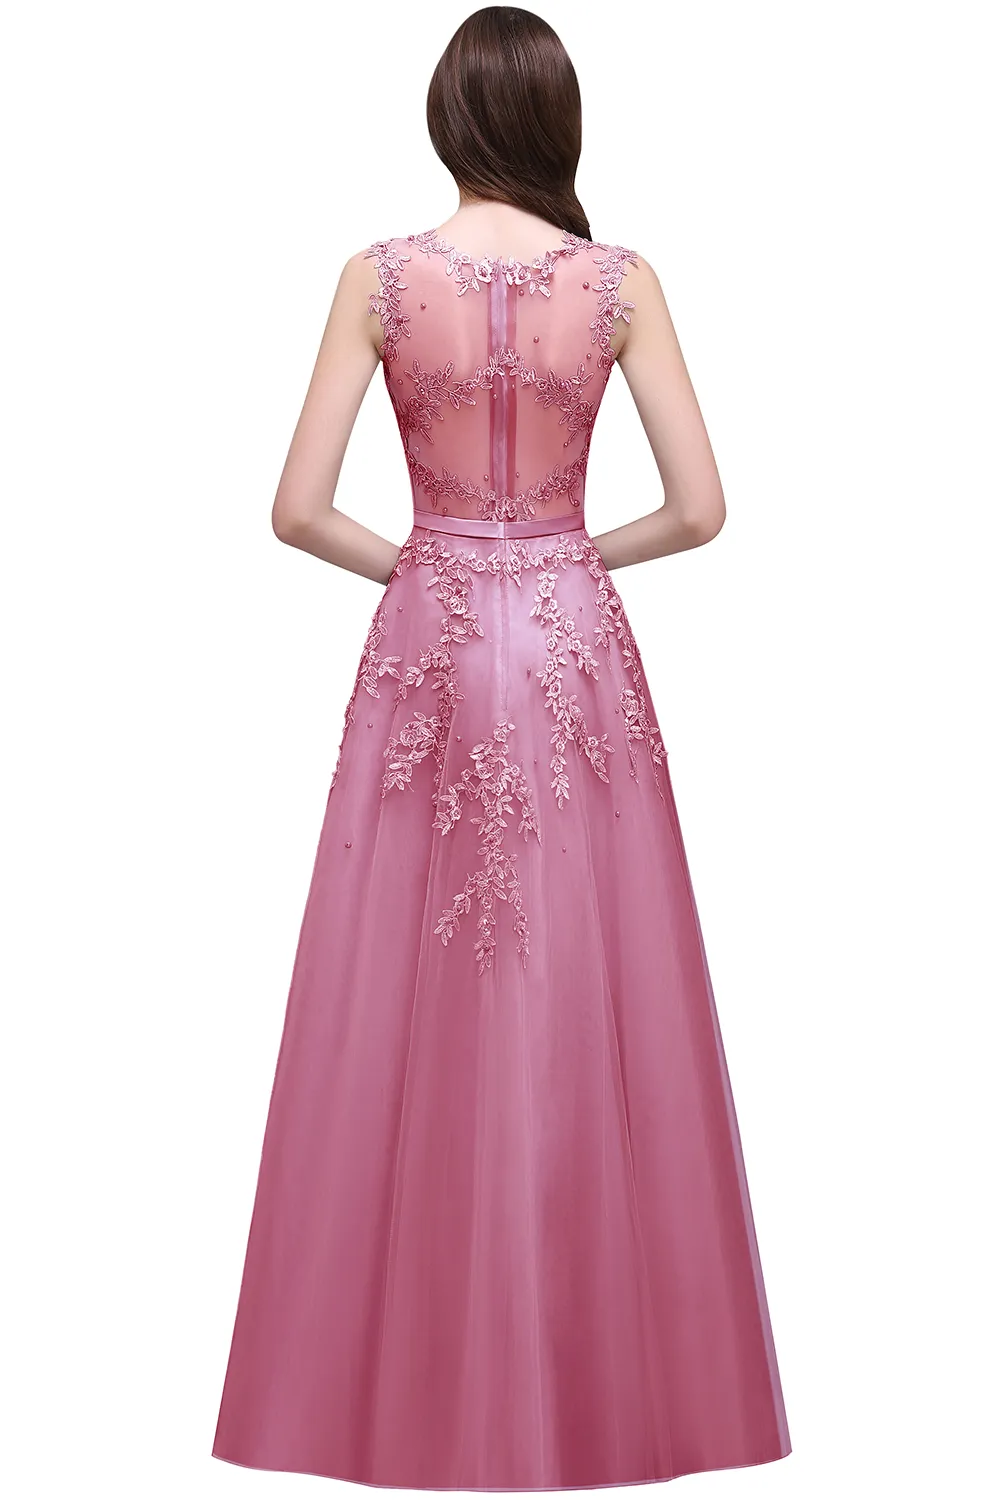 Roze kralen een lijn avondjurk met kant applicaties 2017 sexy pure nek illusie terug Bourgondië lange prom jurken vestido de festa heet